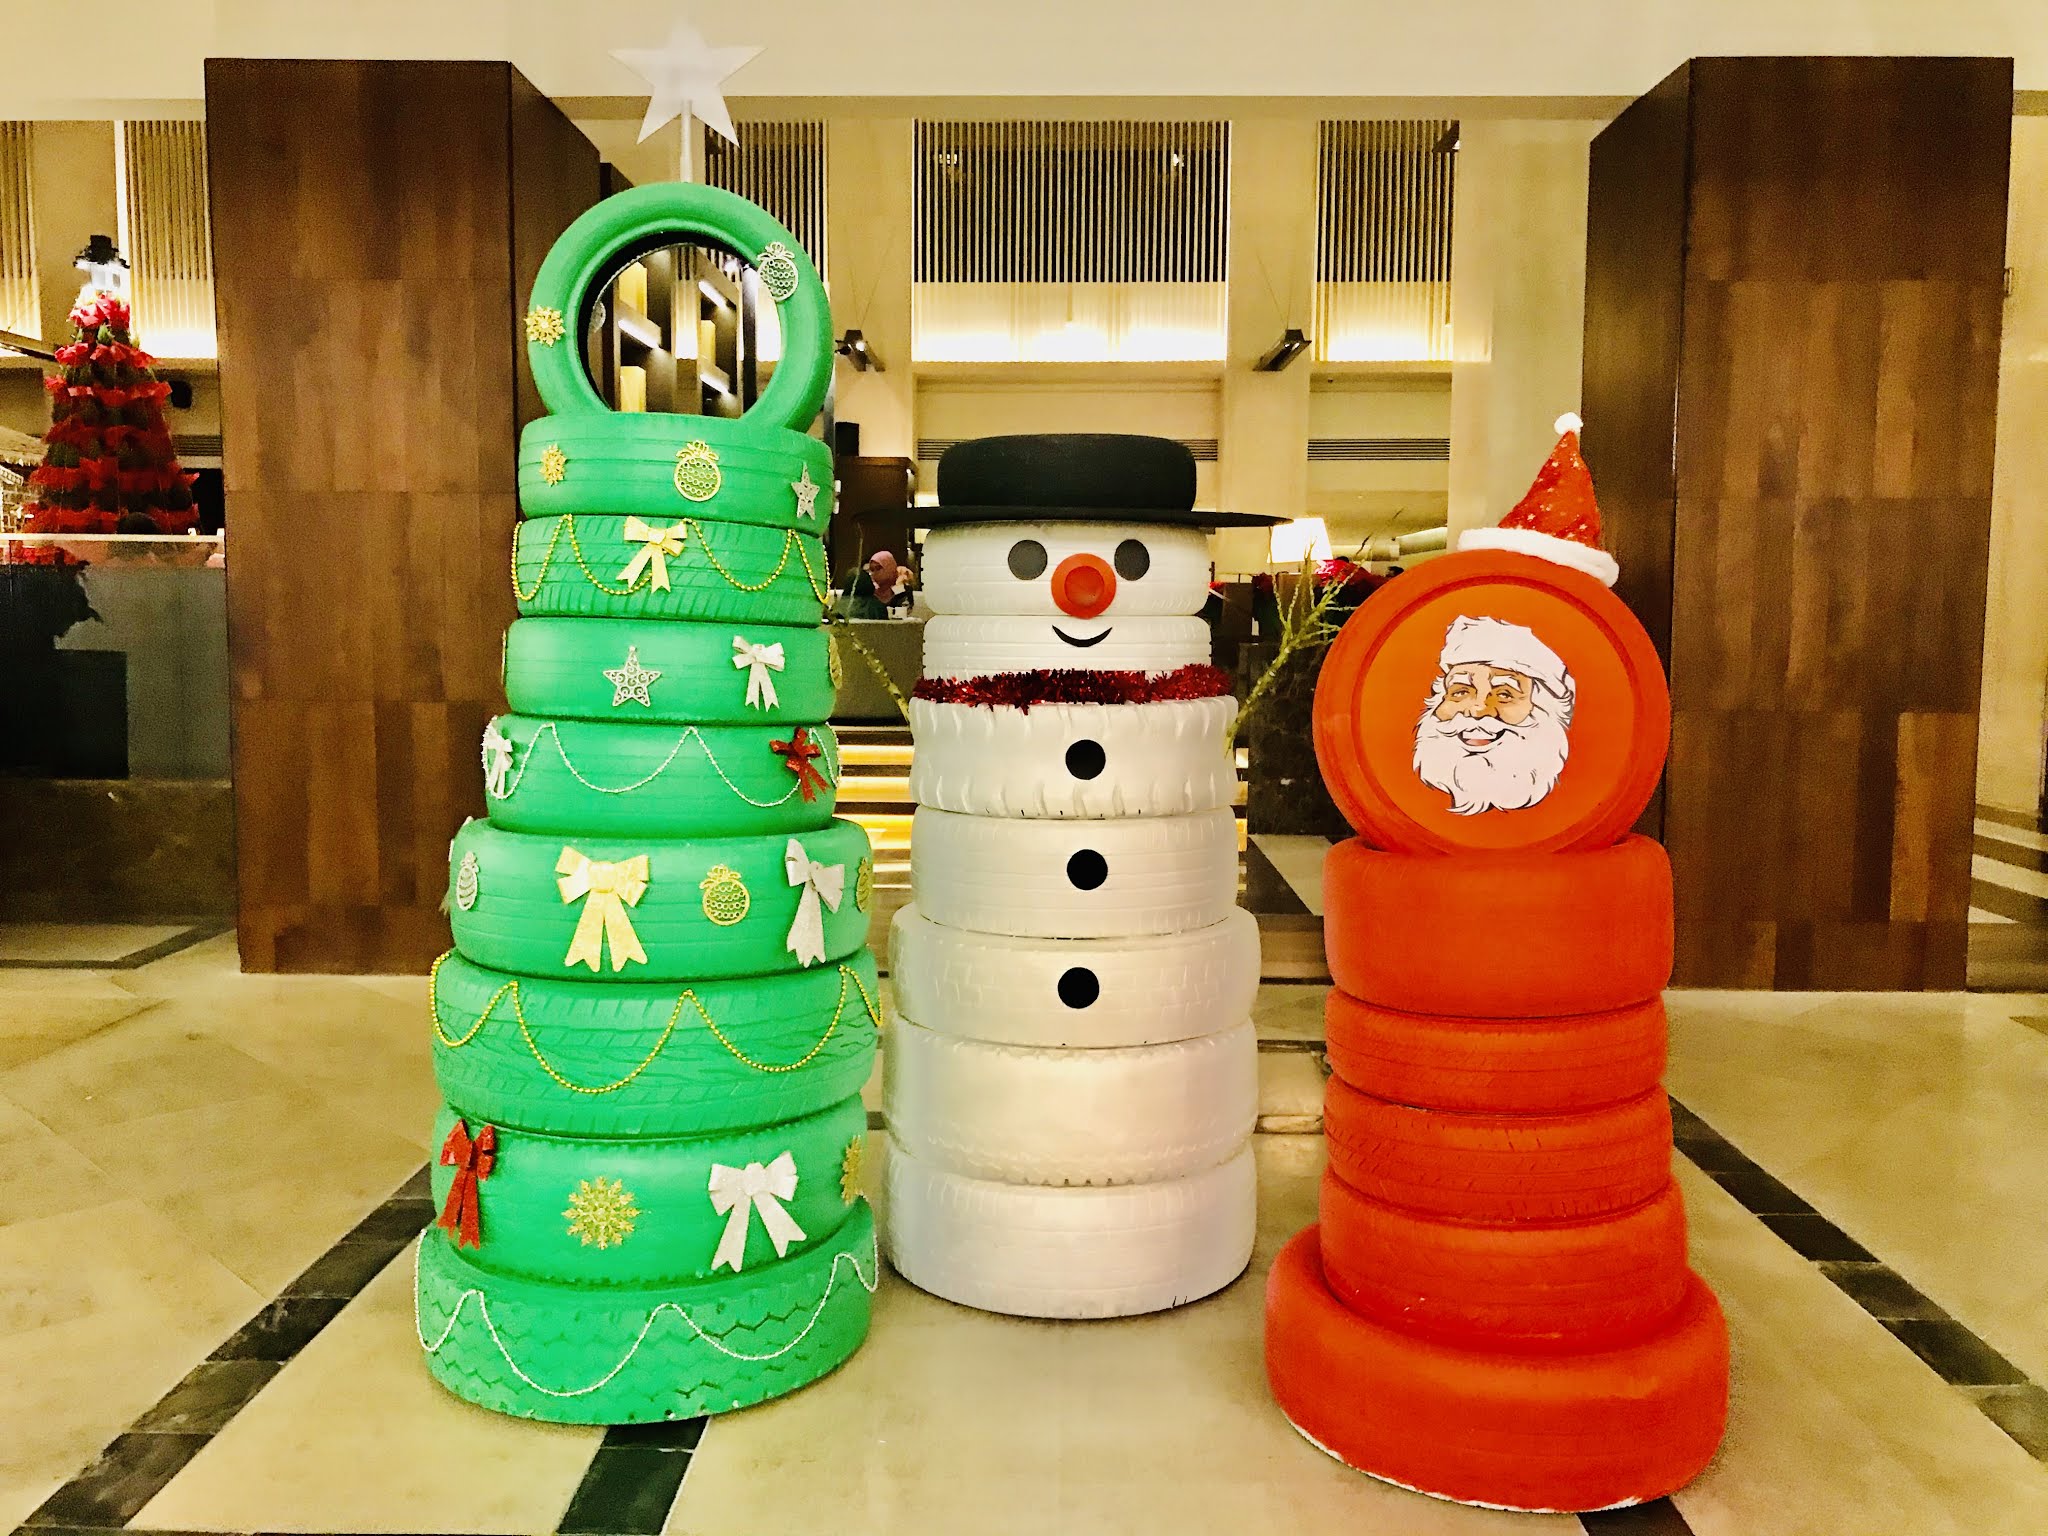 Invoke Your Christmas Childhood Memories”- Themed Christmas Tree Lighting Ceremony At Hyatt Regency Kinabalu